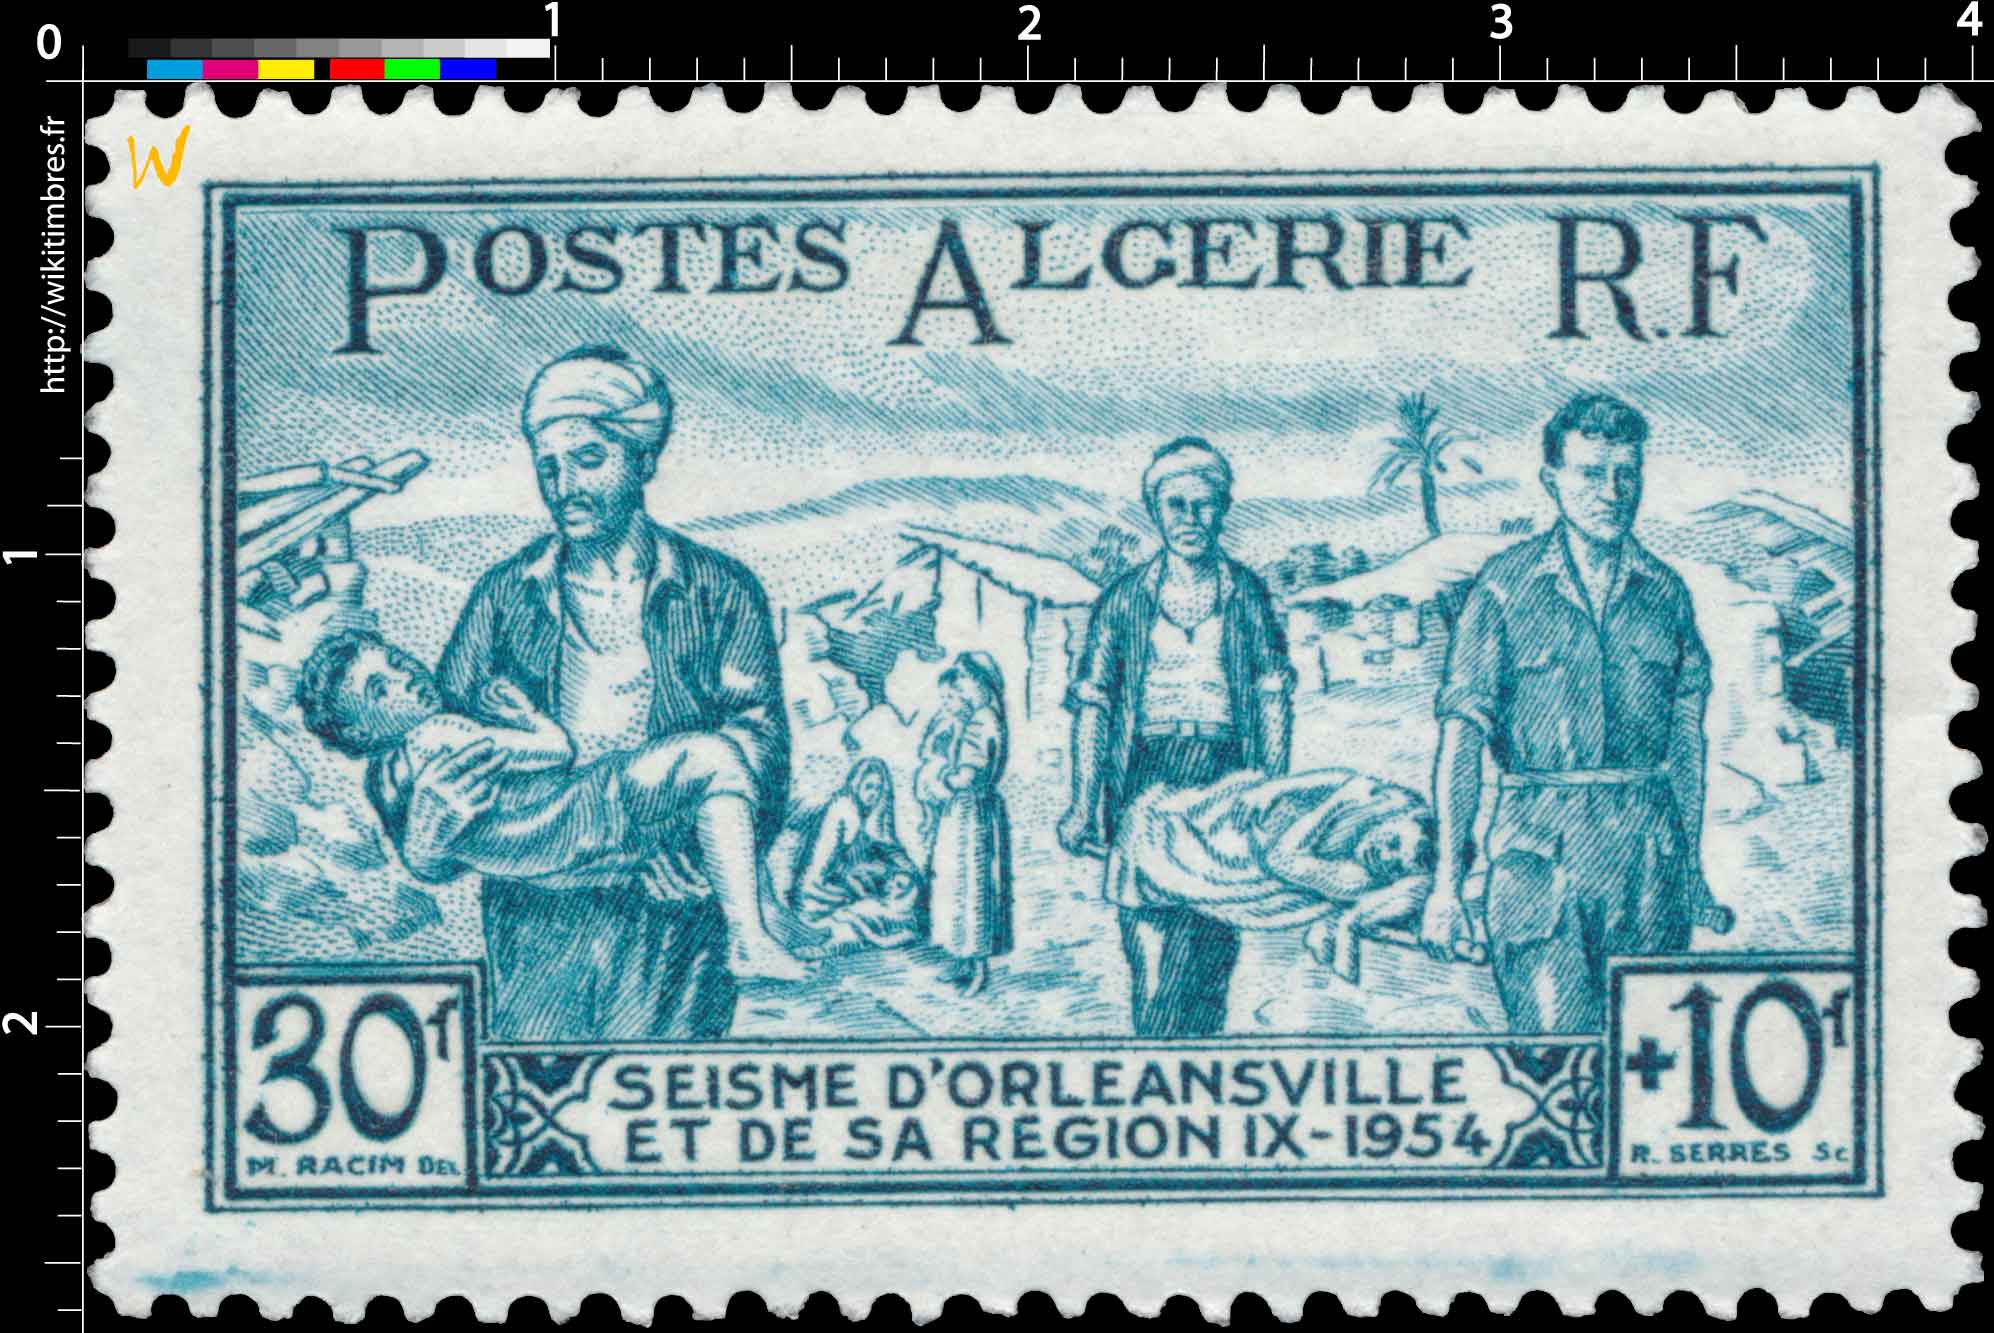 Algérie - Séisme d'Orléansville et de sarégion 1954